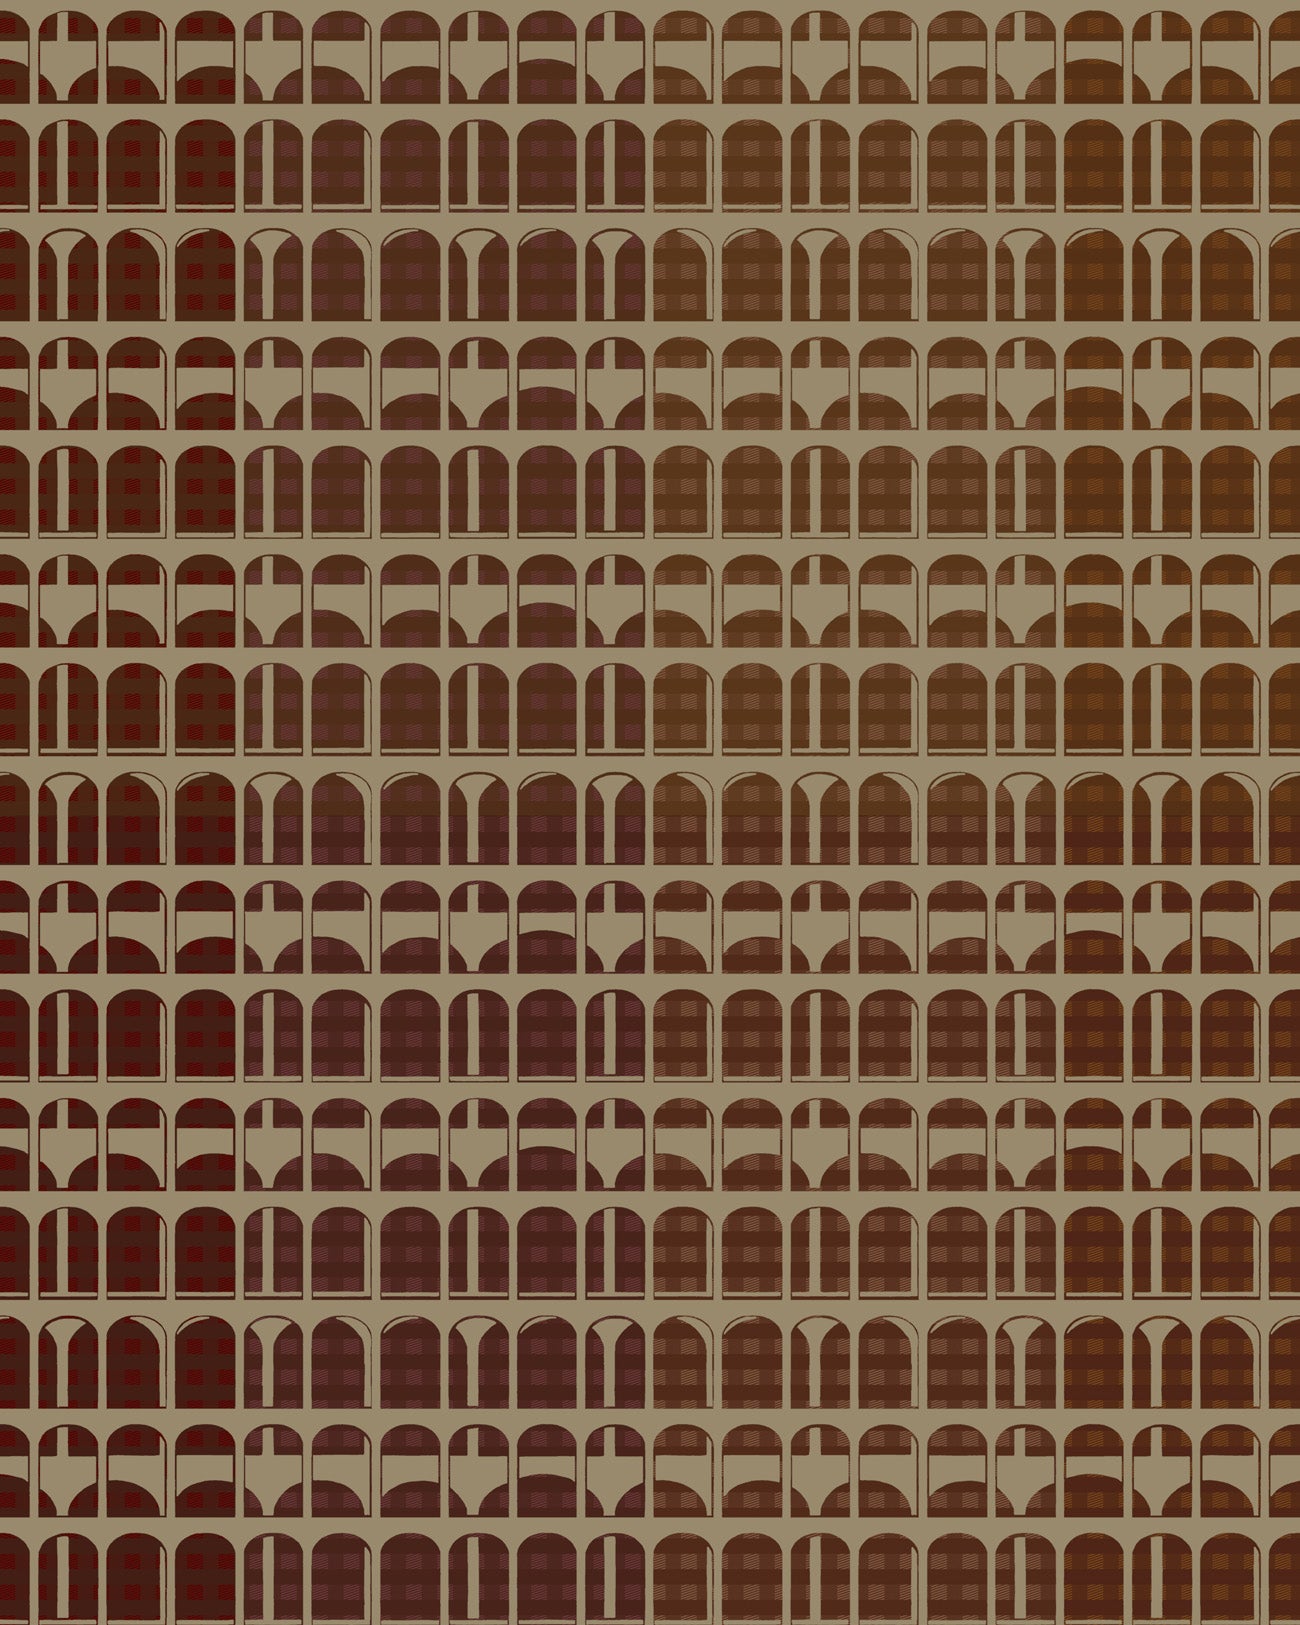 Grafische Mustertapete Profhome VD219159-DI heißgeprägte Vliestapete mit grafischem Design und metallischen Akzenten Rotbraun Gold 5,33 m2